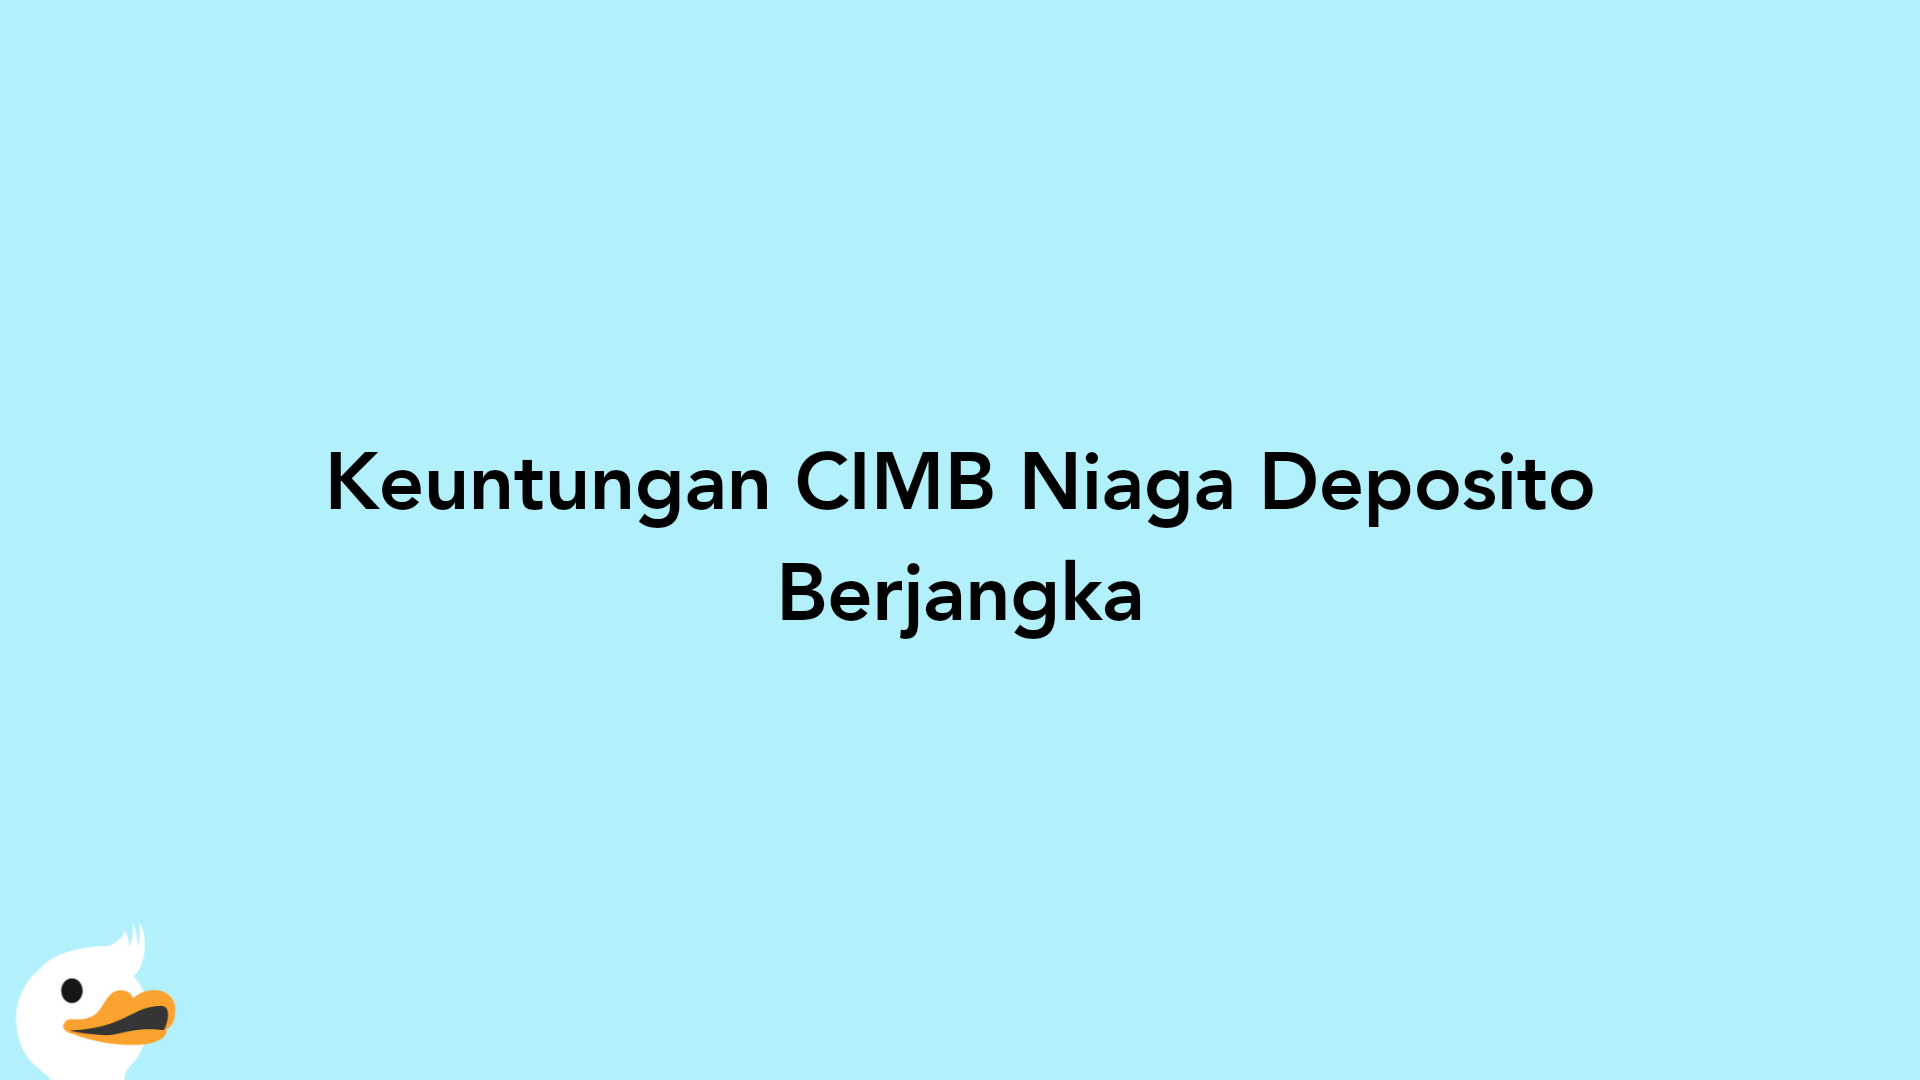 Keuntungan CIMB Niaga Deposito Berjangka